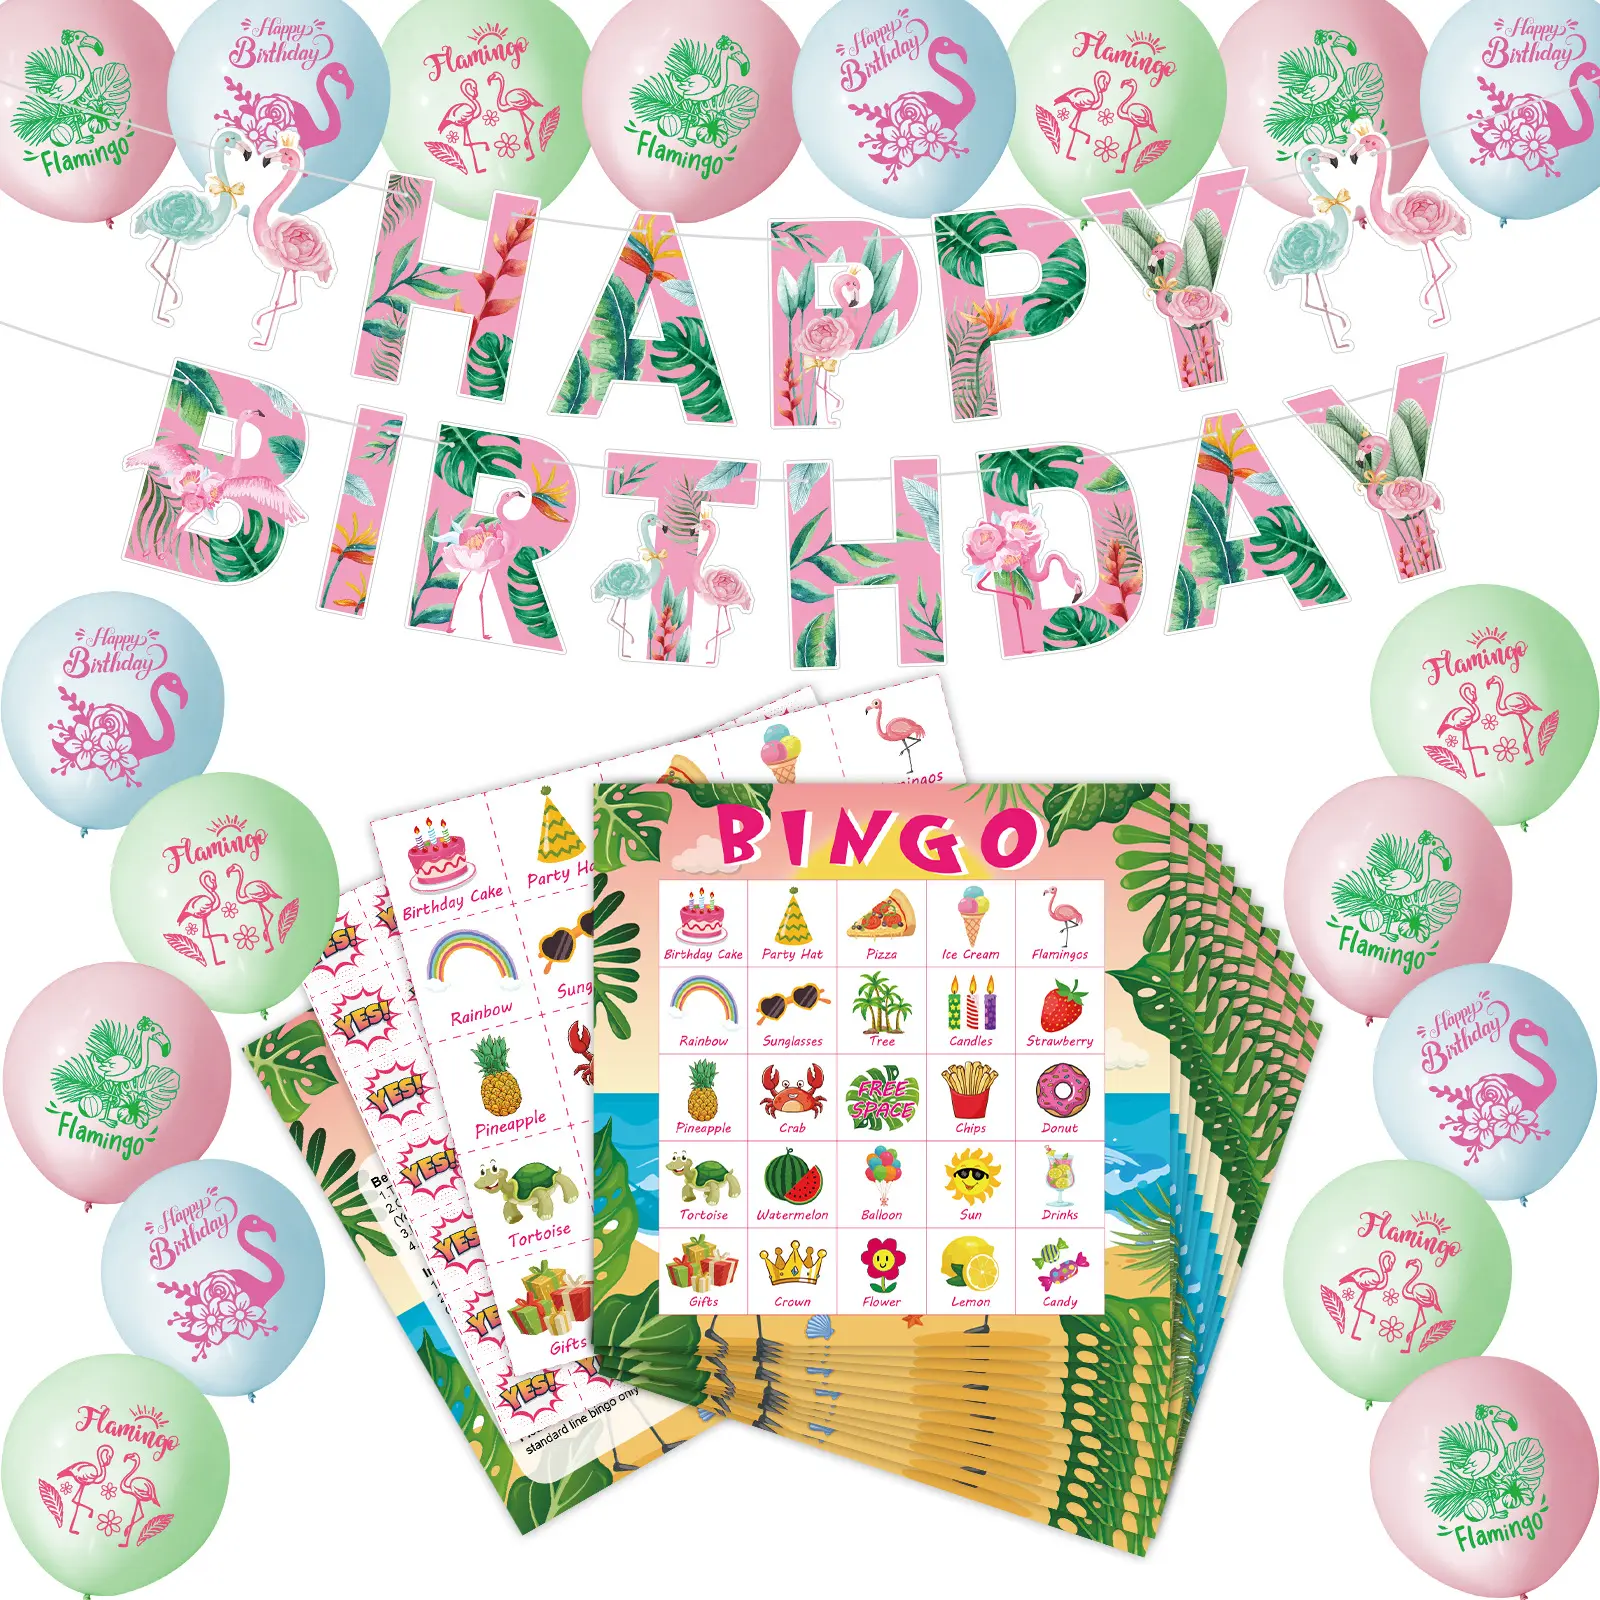 Гавайский фламинго, баннер на день рождения, игры в бинго, карты, пастельные цветные латексные шары для летних праздников, украшения для вечеринки